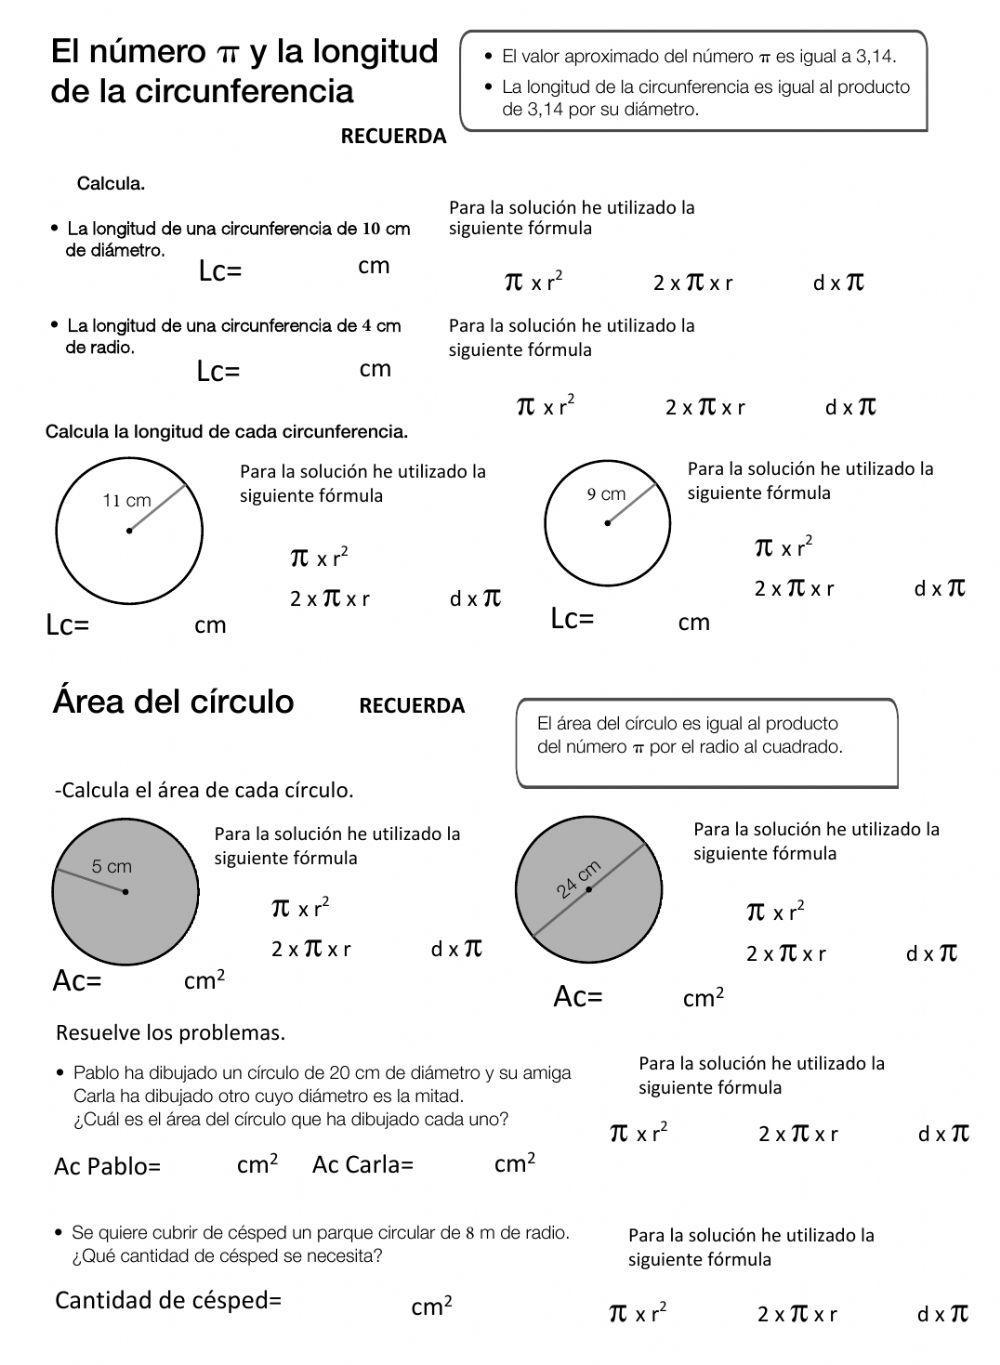 Área del círculo y longitud de la circunferencia